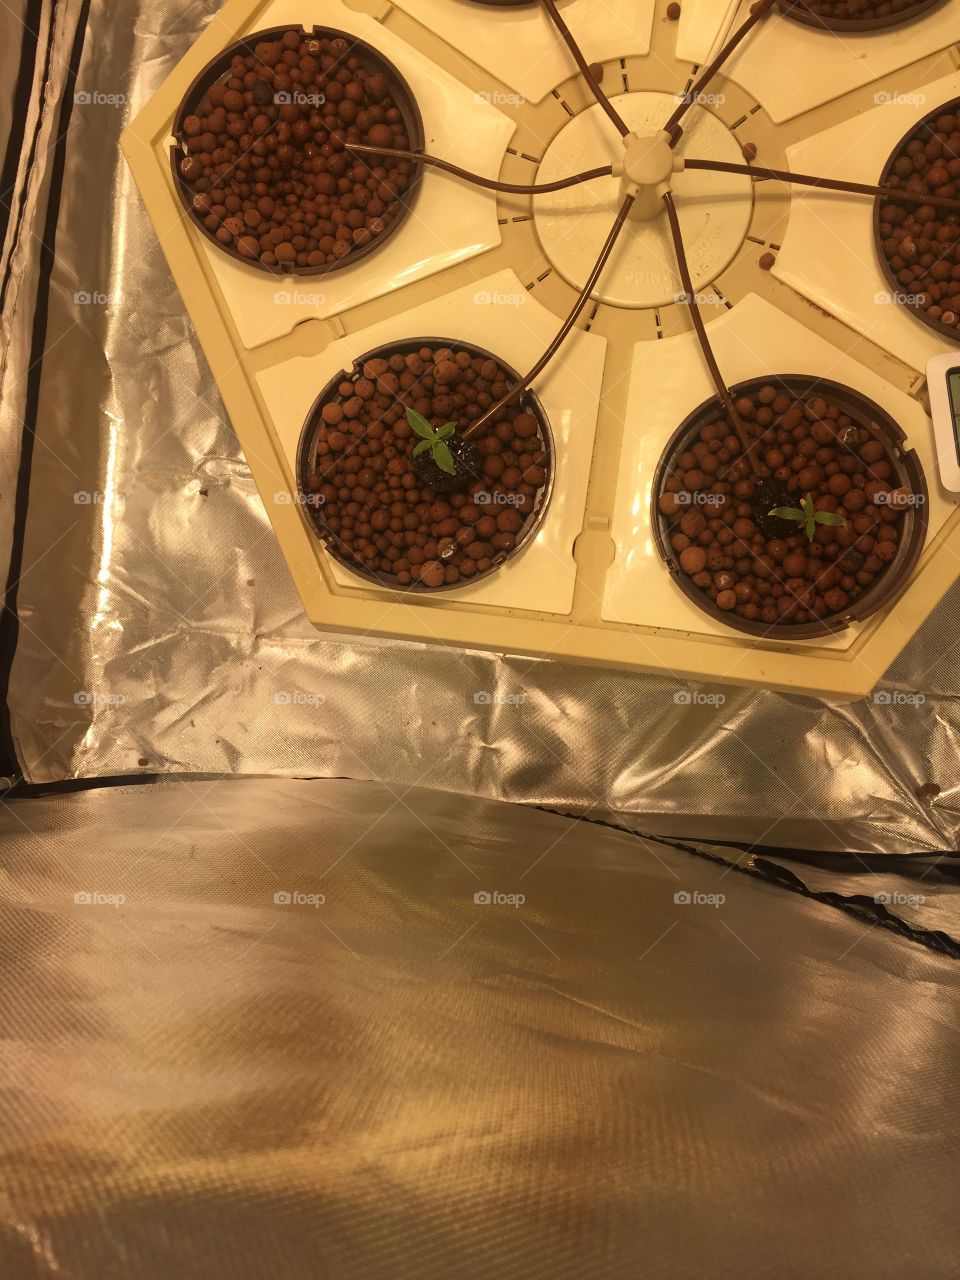 2 cannabis seedlings, May 15, 2018. 